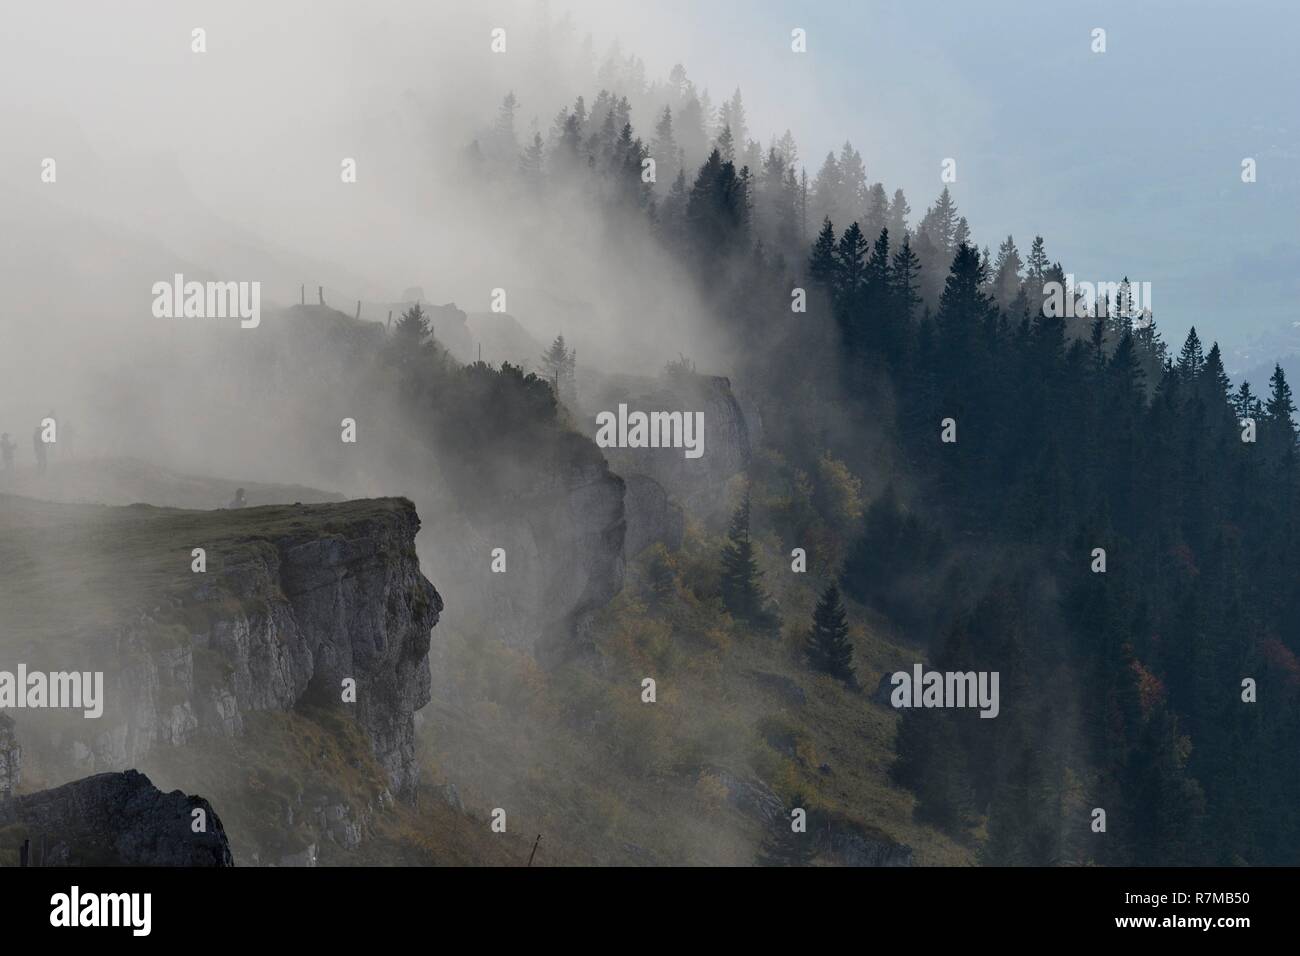 La Svizzera, del Giura, il cantone di Neuchâtel, massiccio Chasseral, Massif du Jura, di nebbia che copre la nervatura e la foresta di abeti Foto Stock